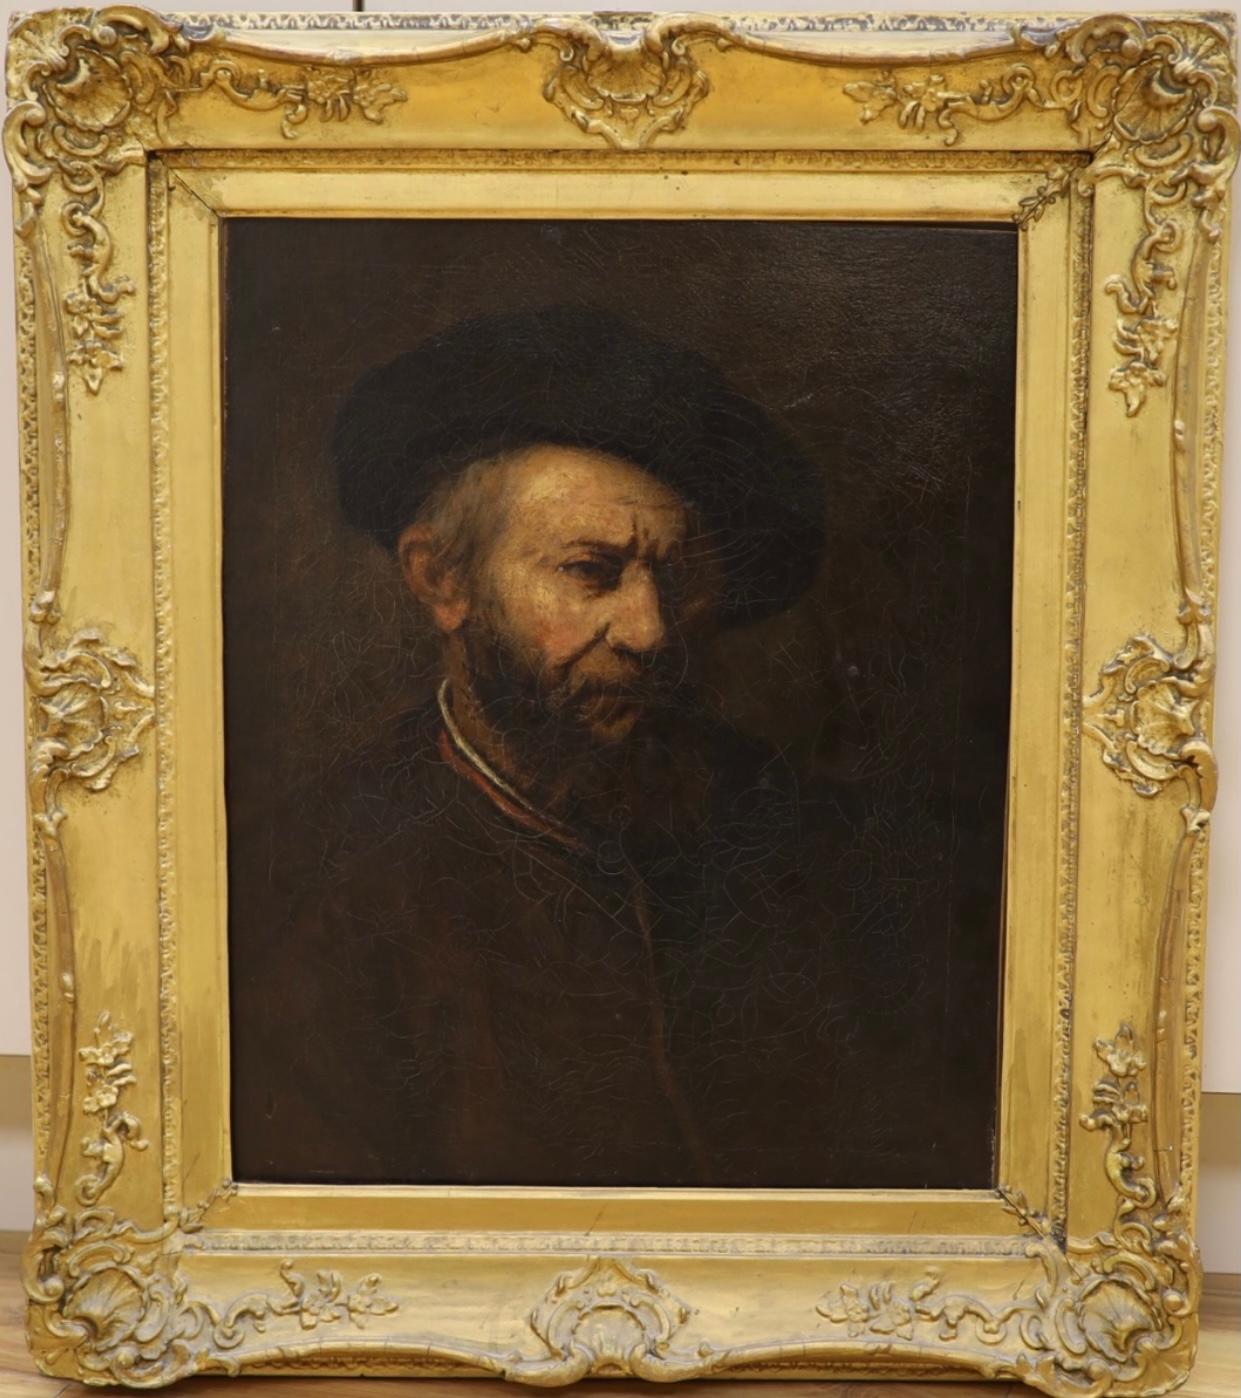 (After) Rembrandt van Rijn  Portrait Painting - Rembrandt self portrait